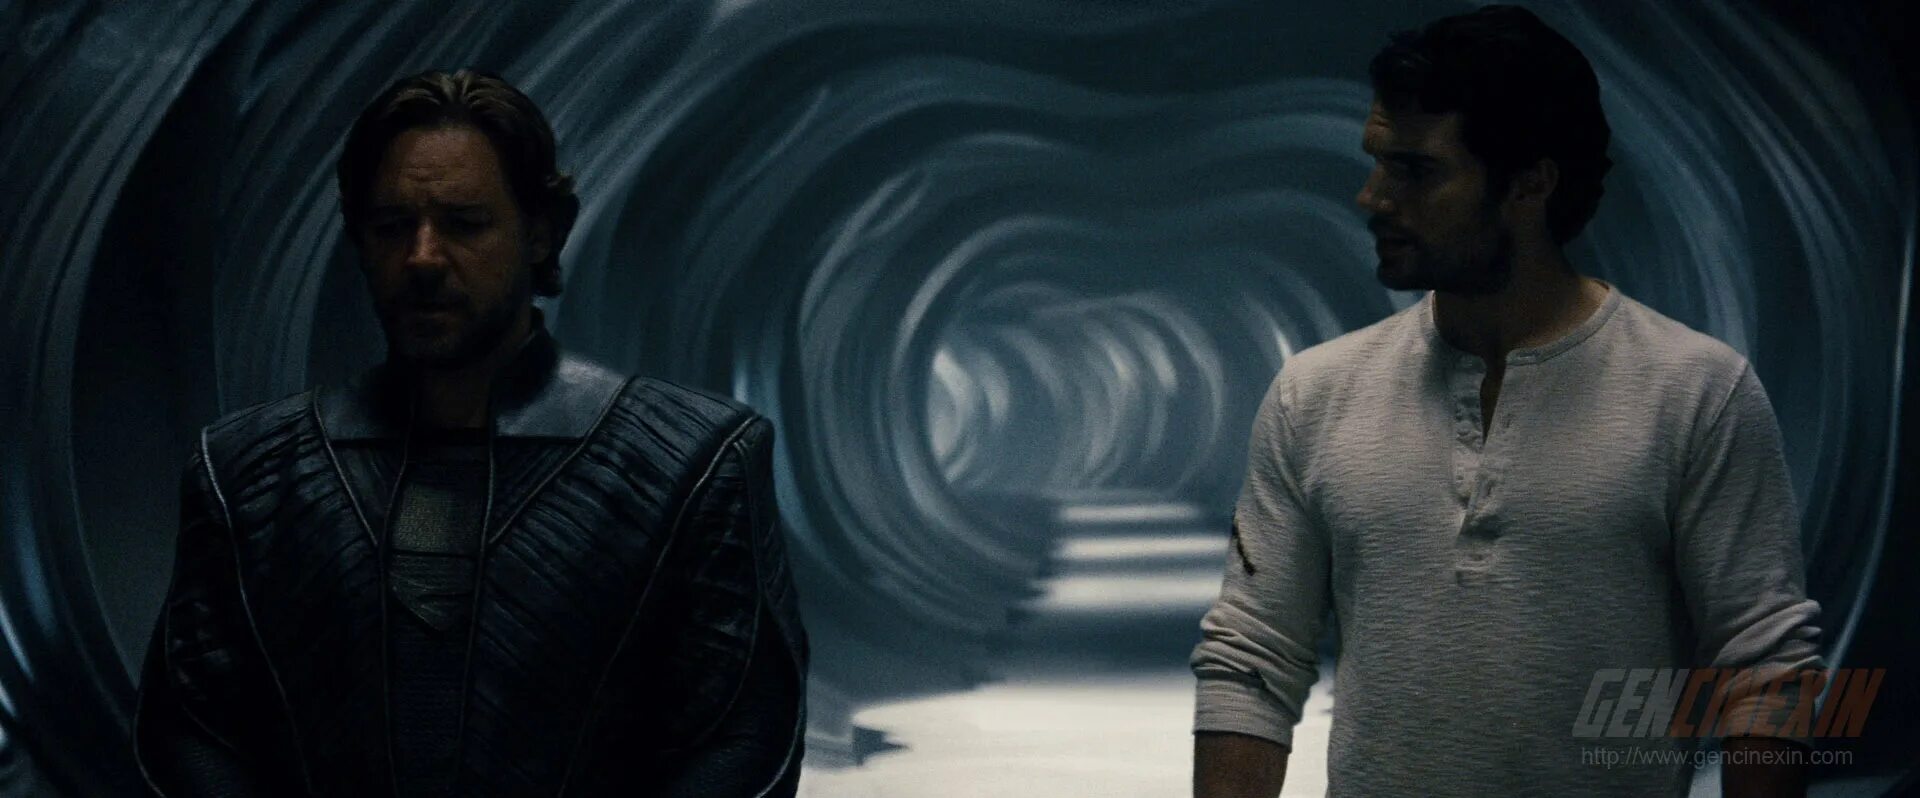 Келор человек из стали. Man of Steel 2013. Человек из стали. Man of Steel (2013) (1080p). Человек из Линкоу.